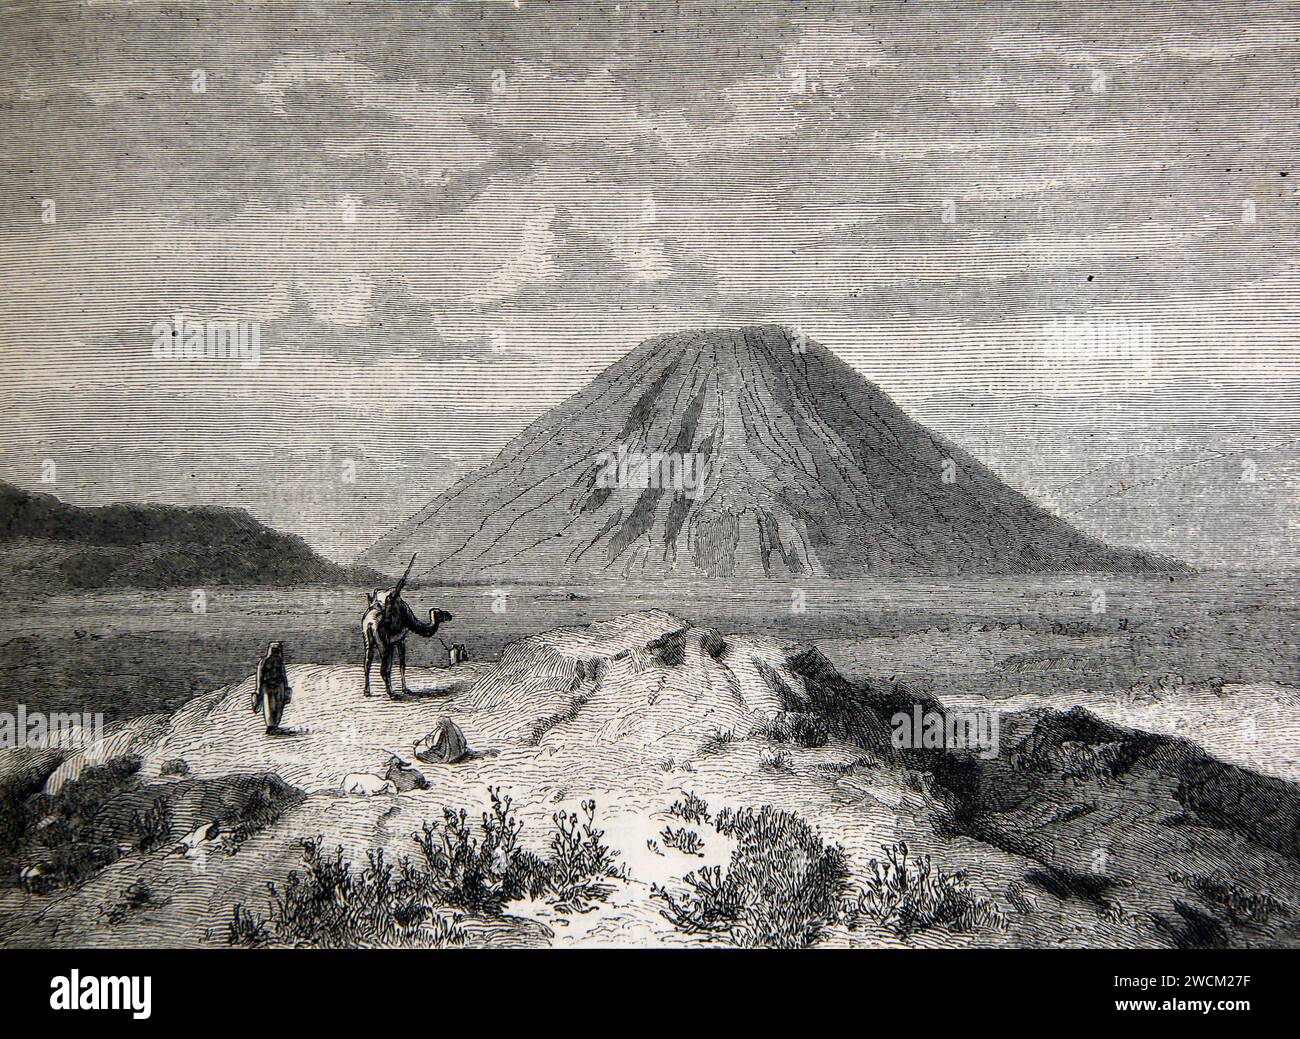 Abbildung des Monte Tabor in Israel, wo die Schlacht am Monte Tabor zwischen den Israeliten und den Kanaaniten stattfand Stockfoto